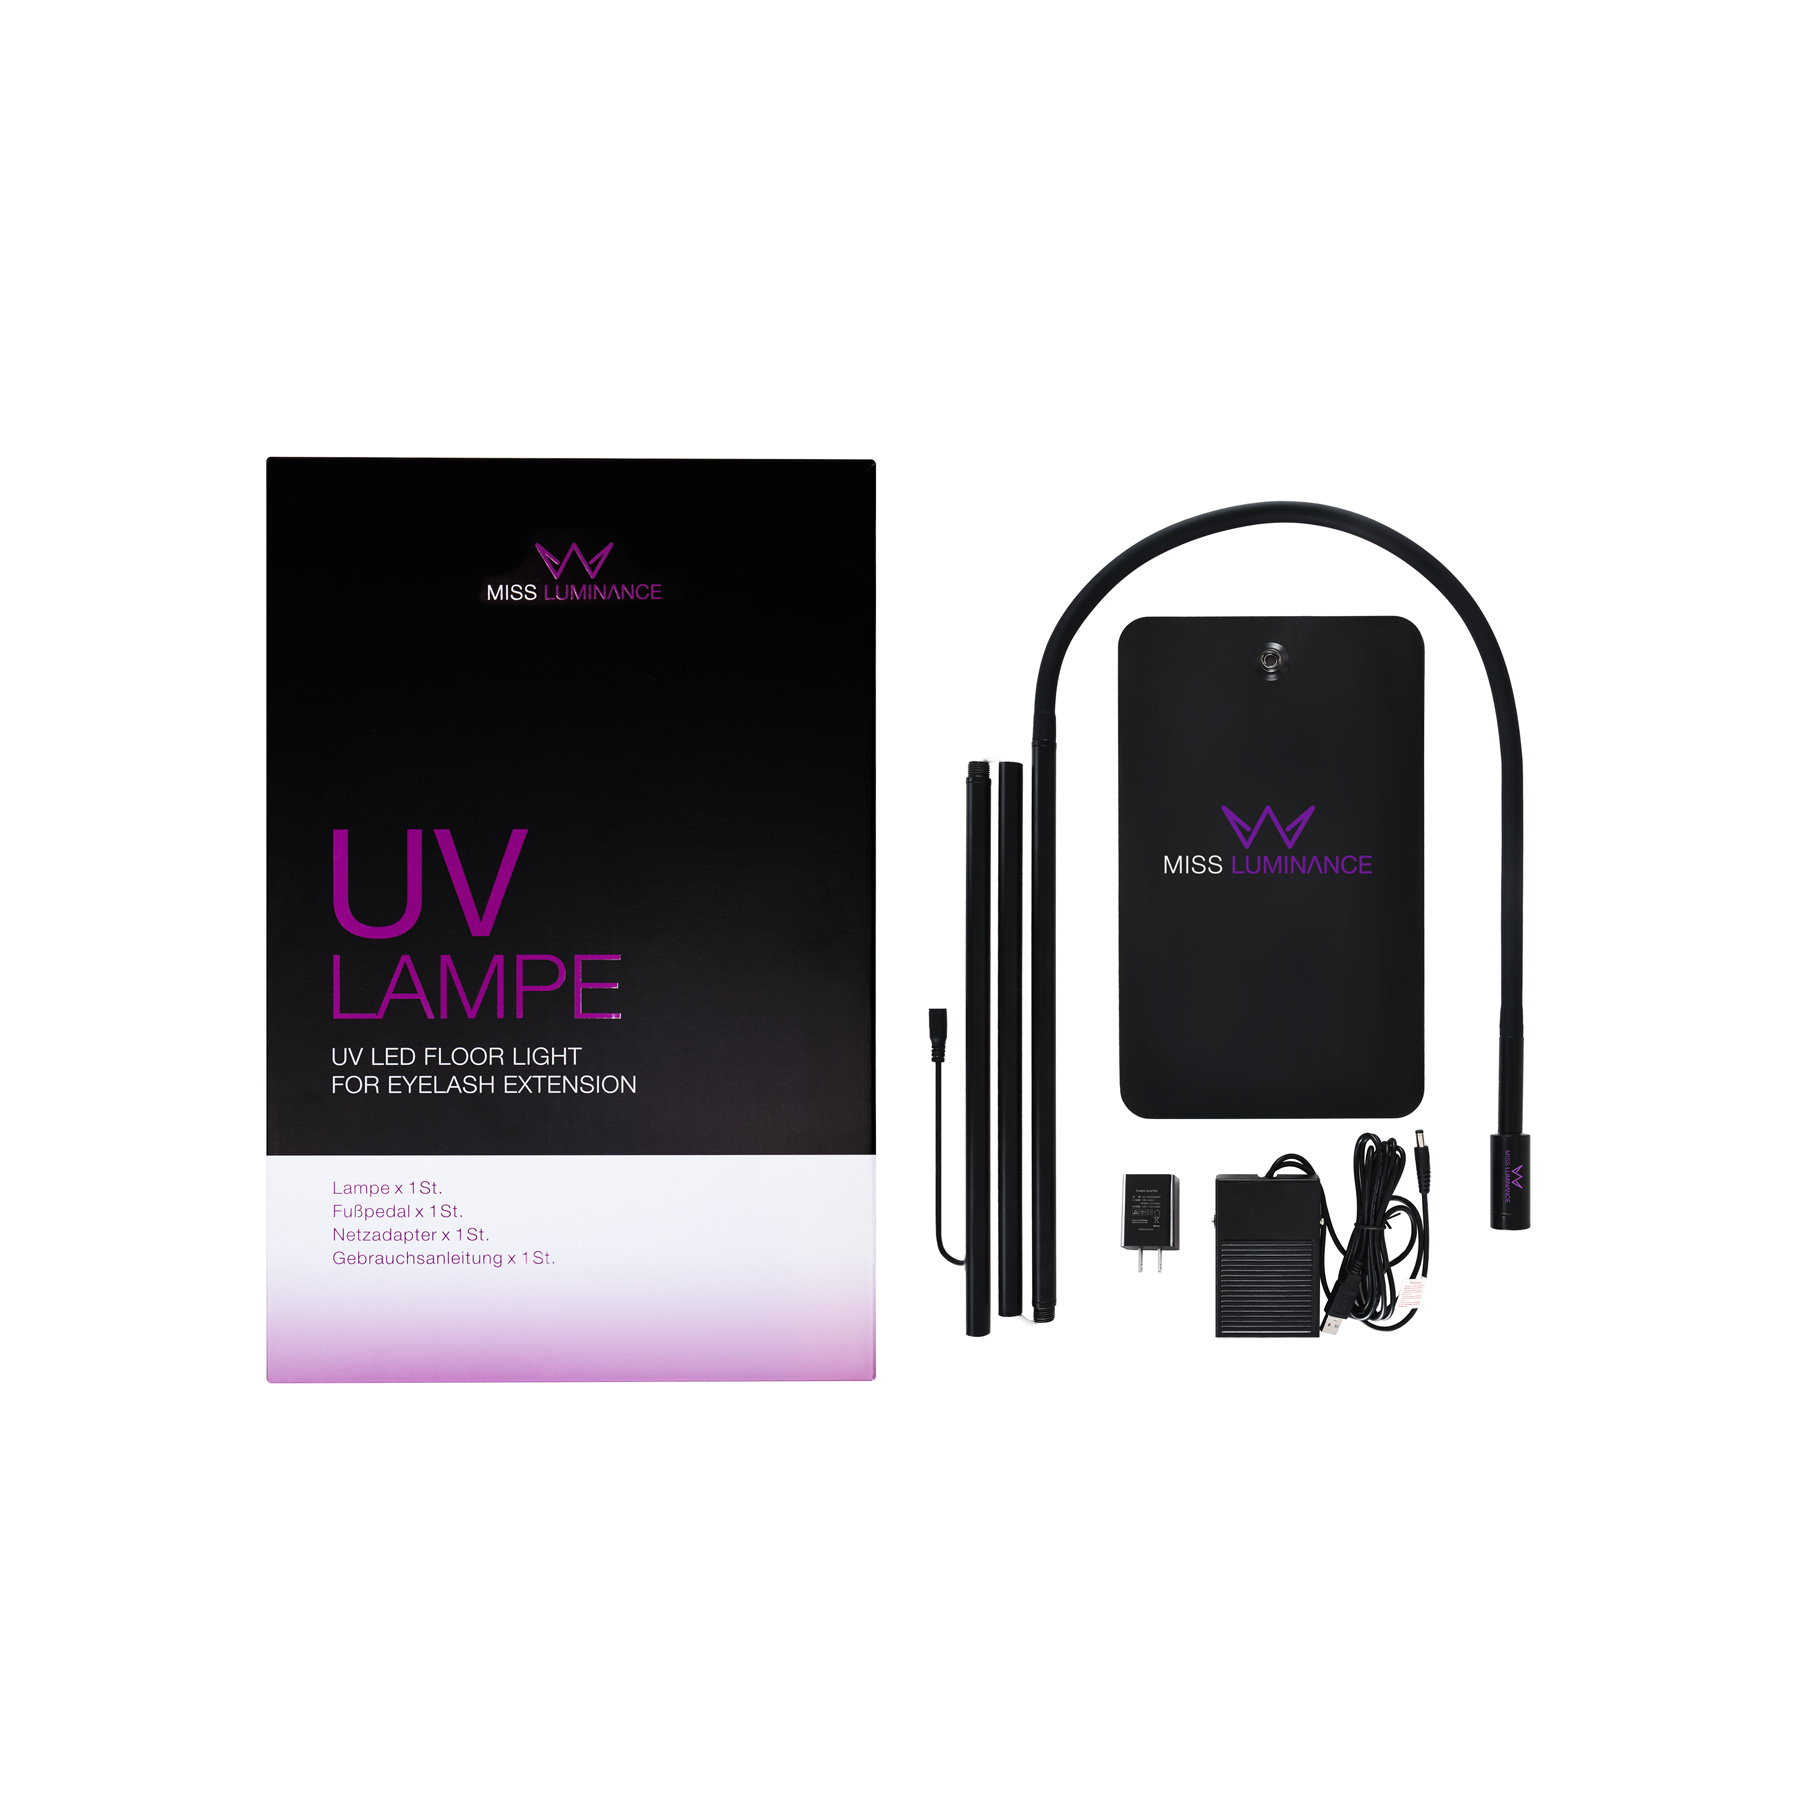 UV-Lamp | White or Black